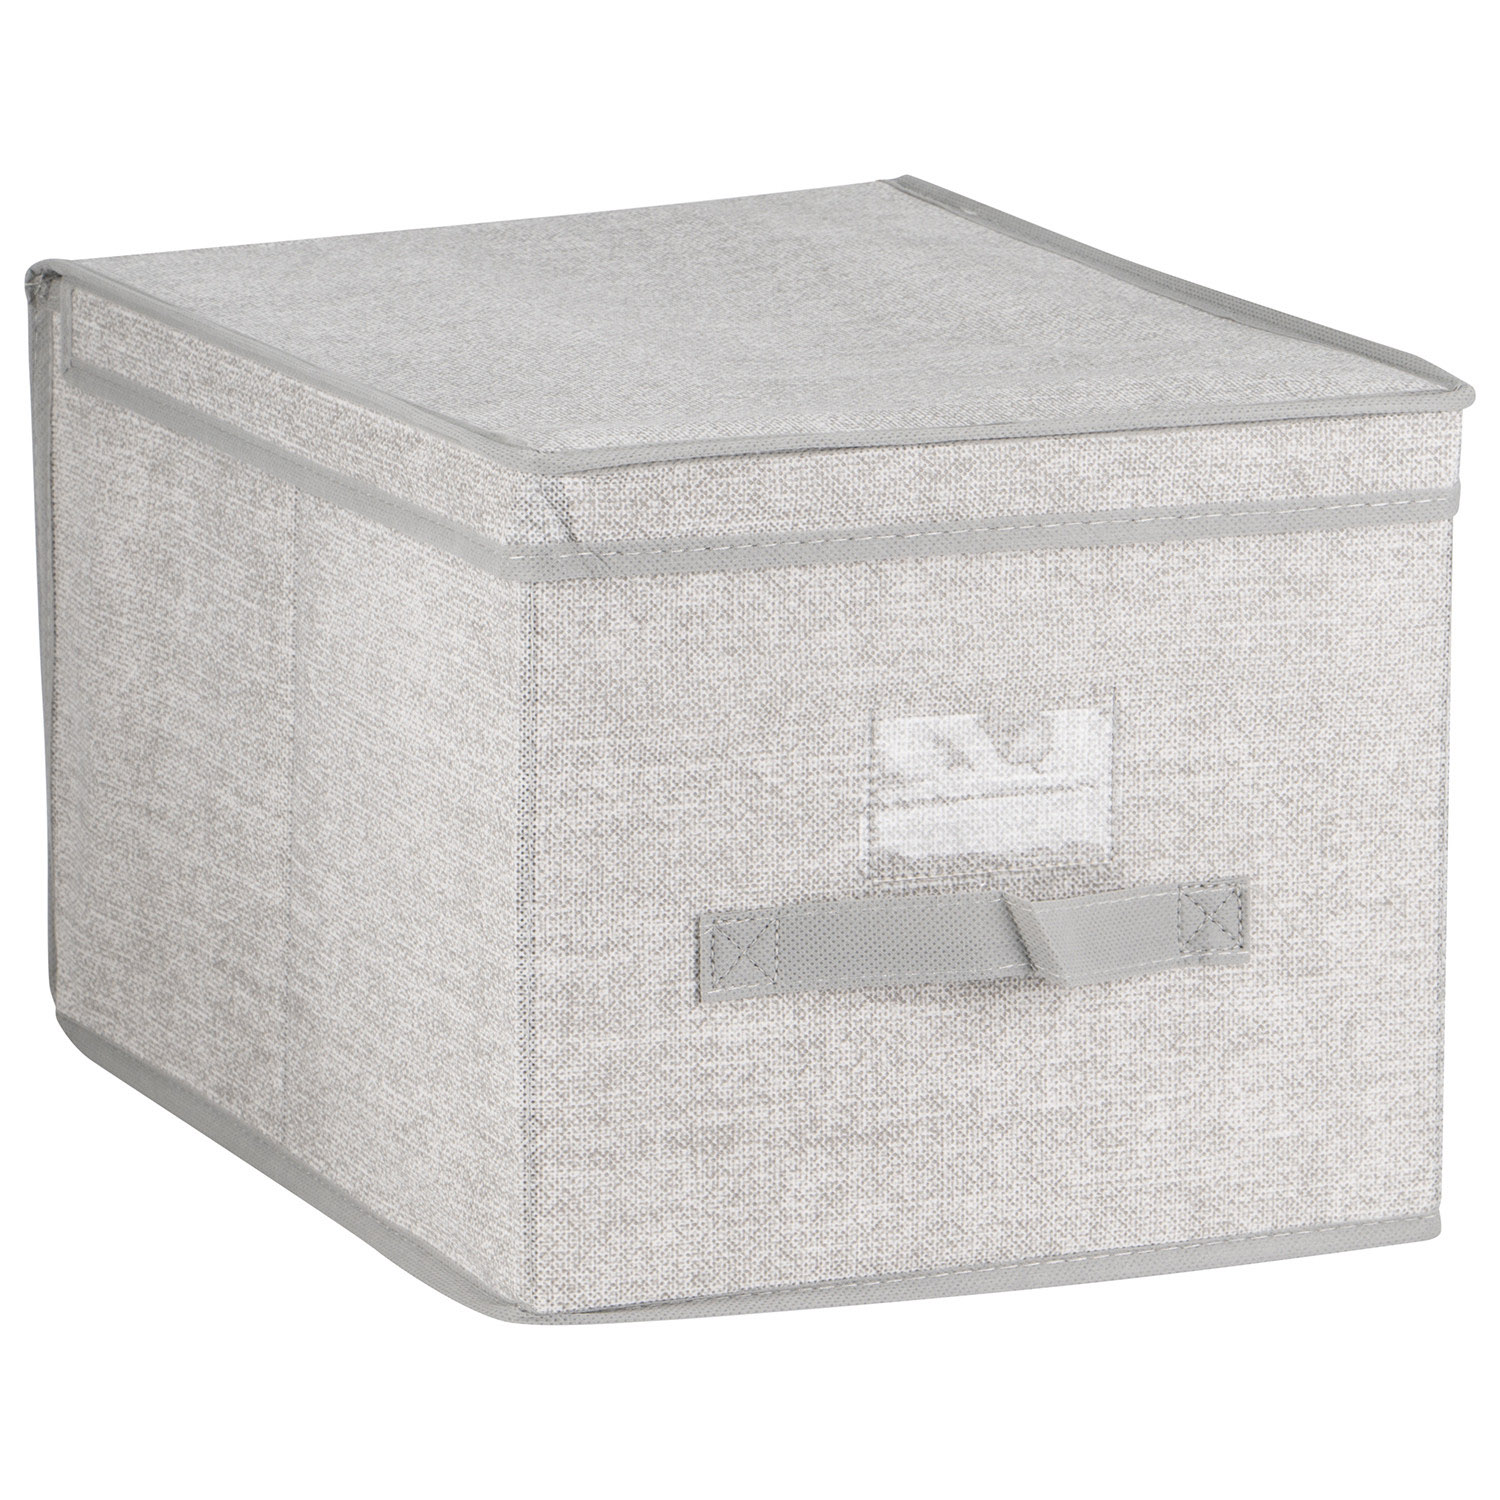 Foldable Fabric Grey Large Storage Box Image 1